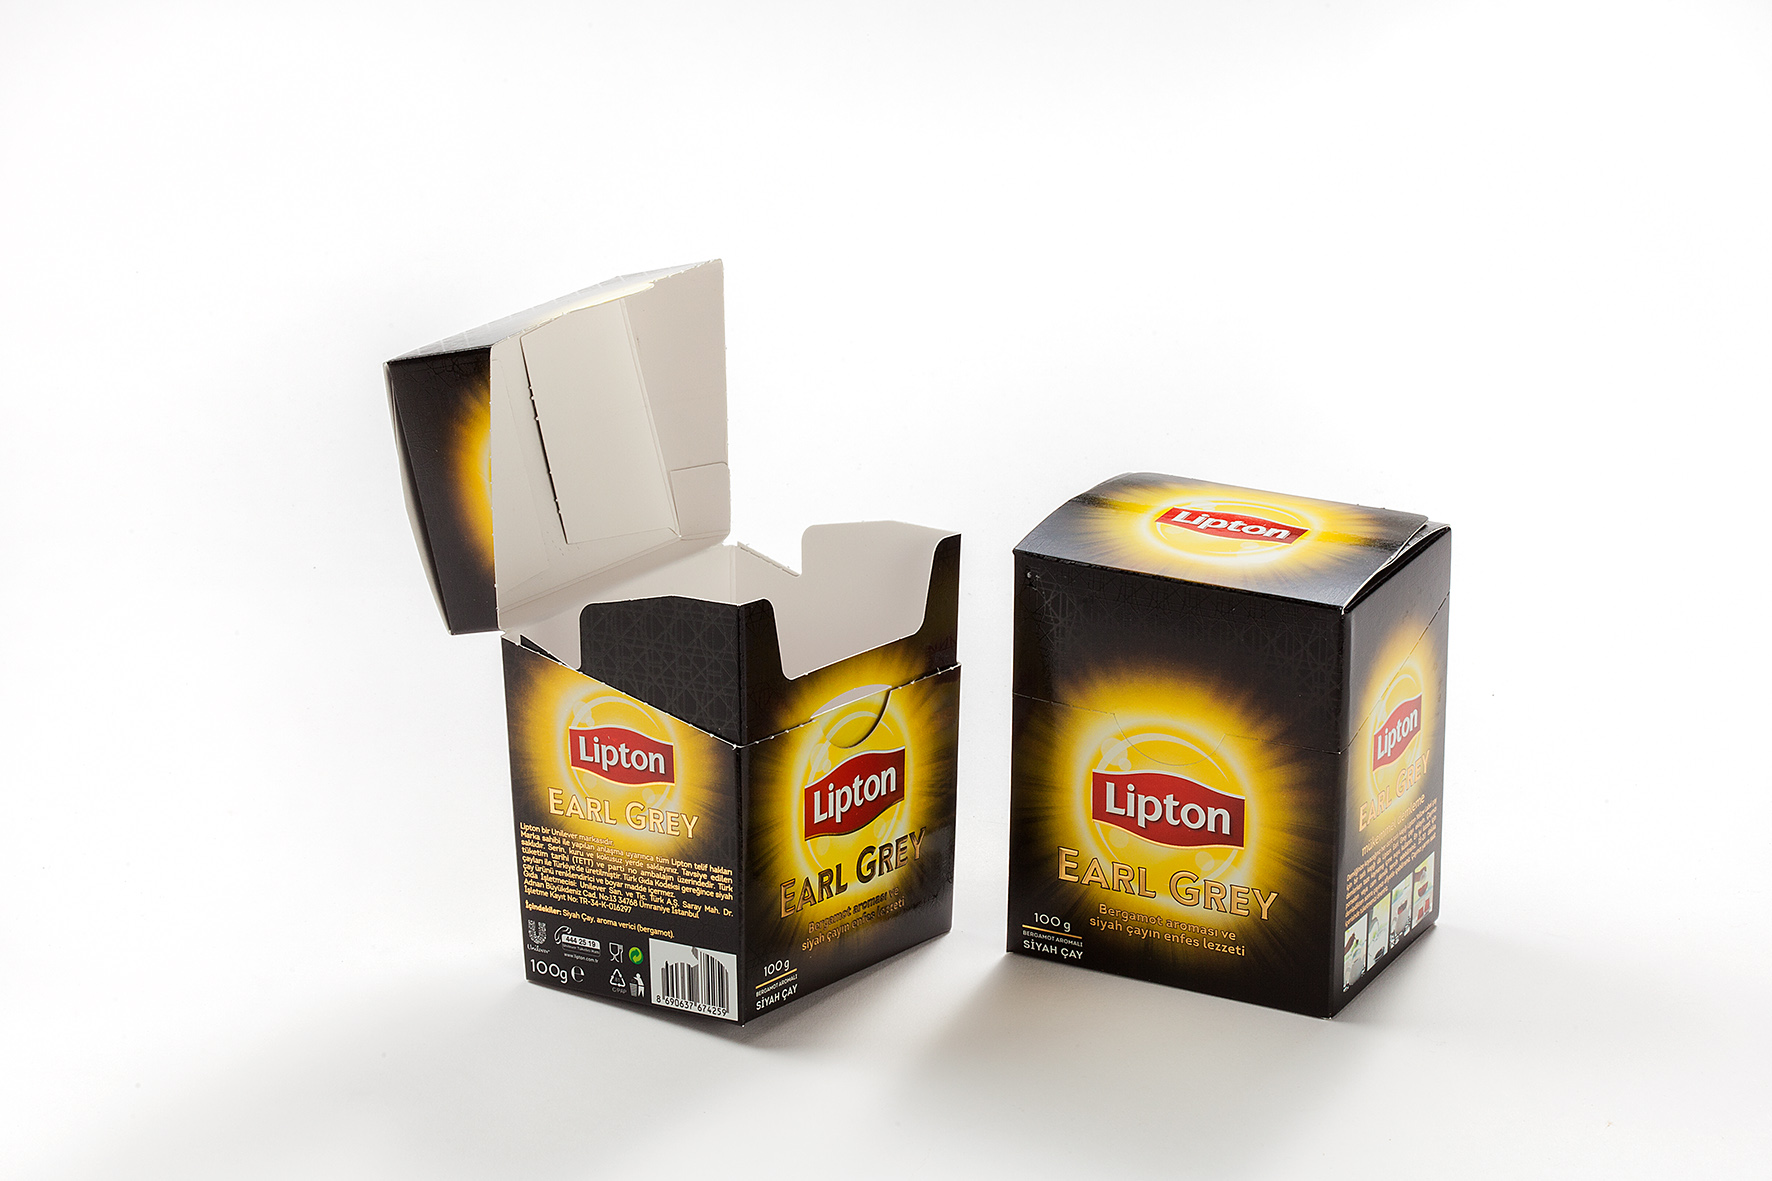 Lipton Earl Grey 100 g Caja de cartón